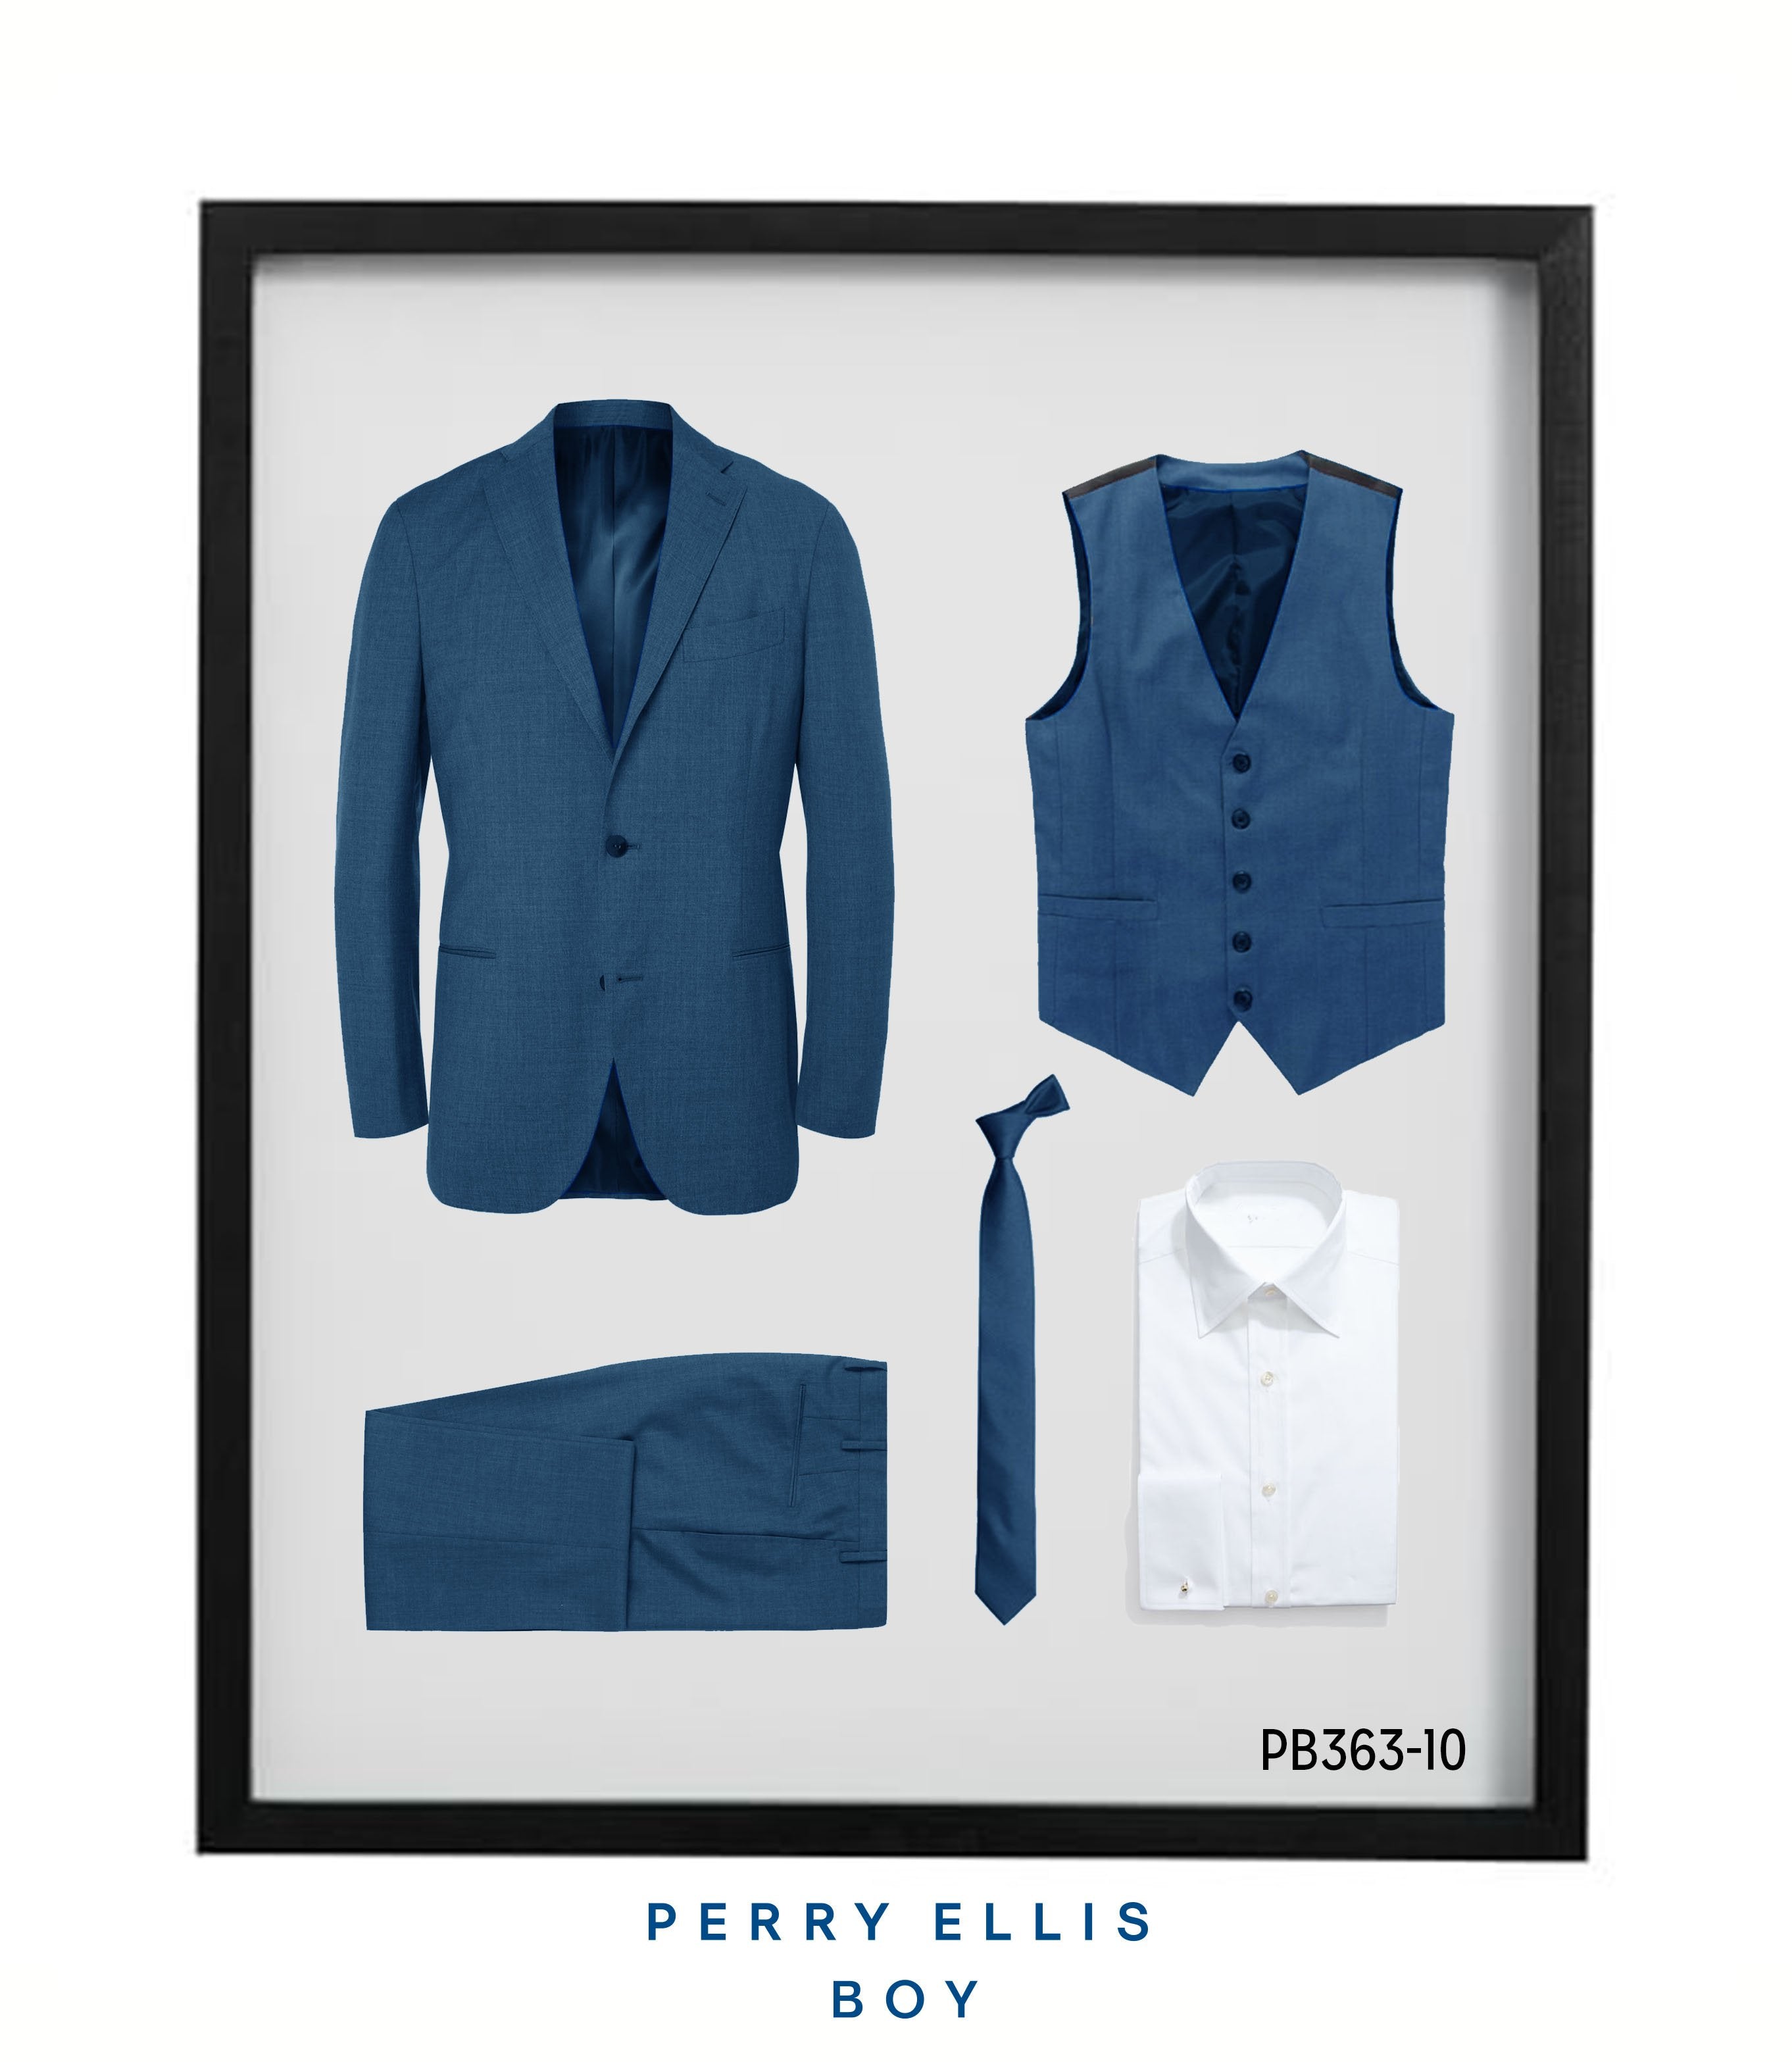 Perry Ellis Boys Suit Indigo Blue Suits For Boy's